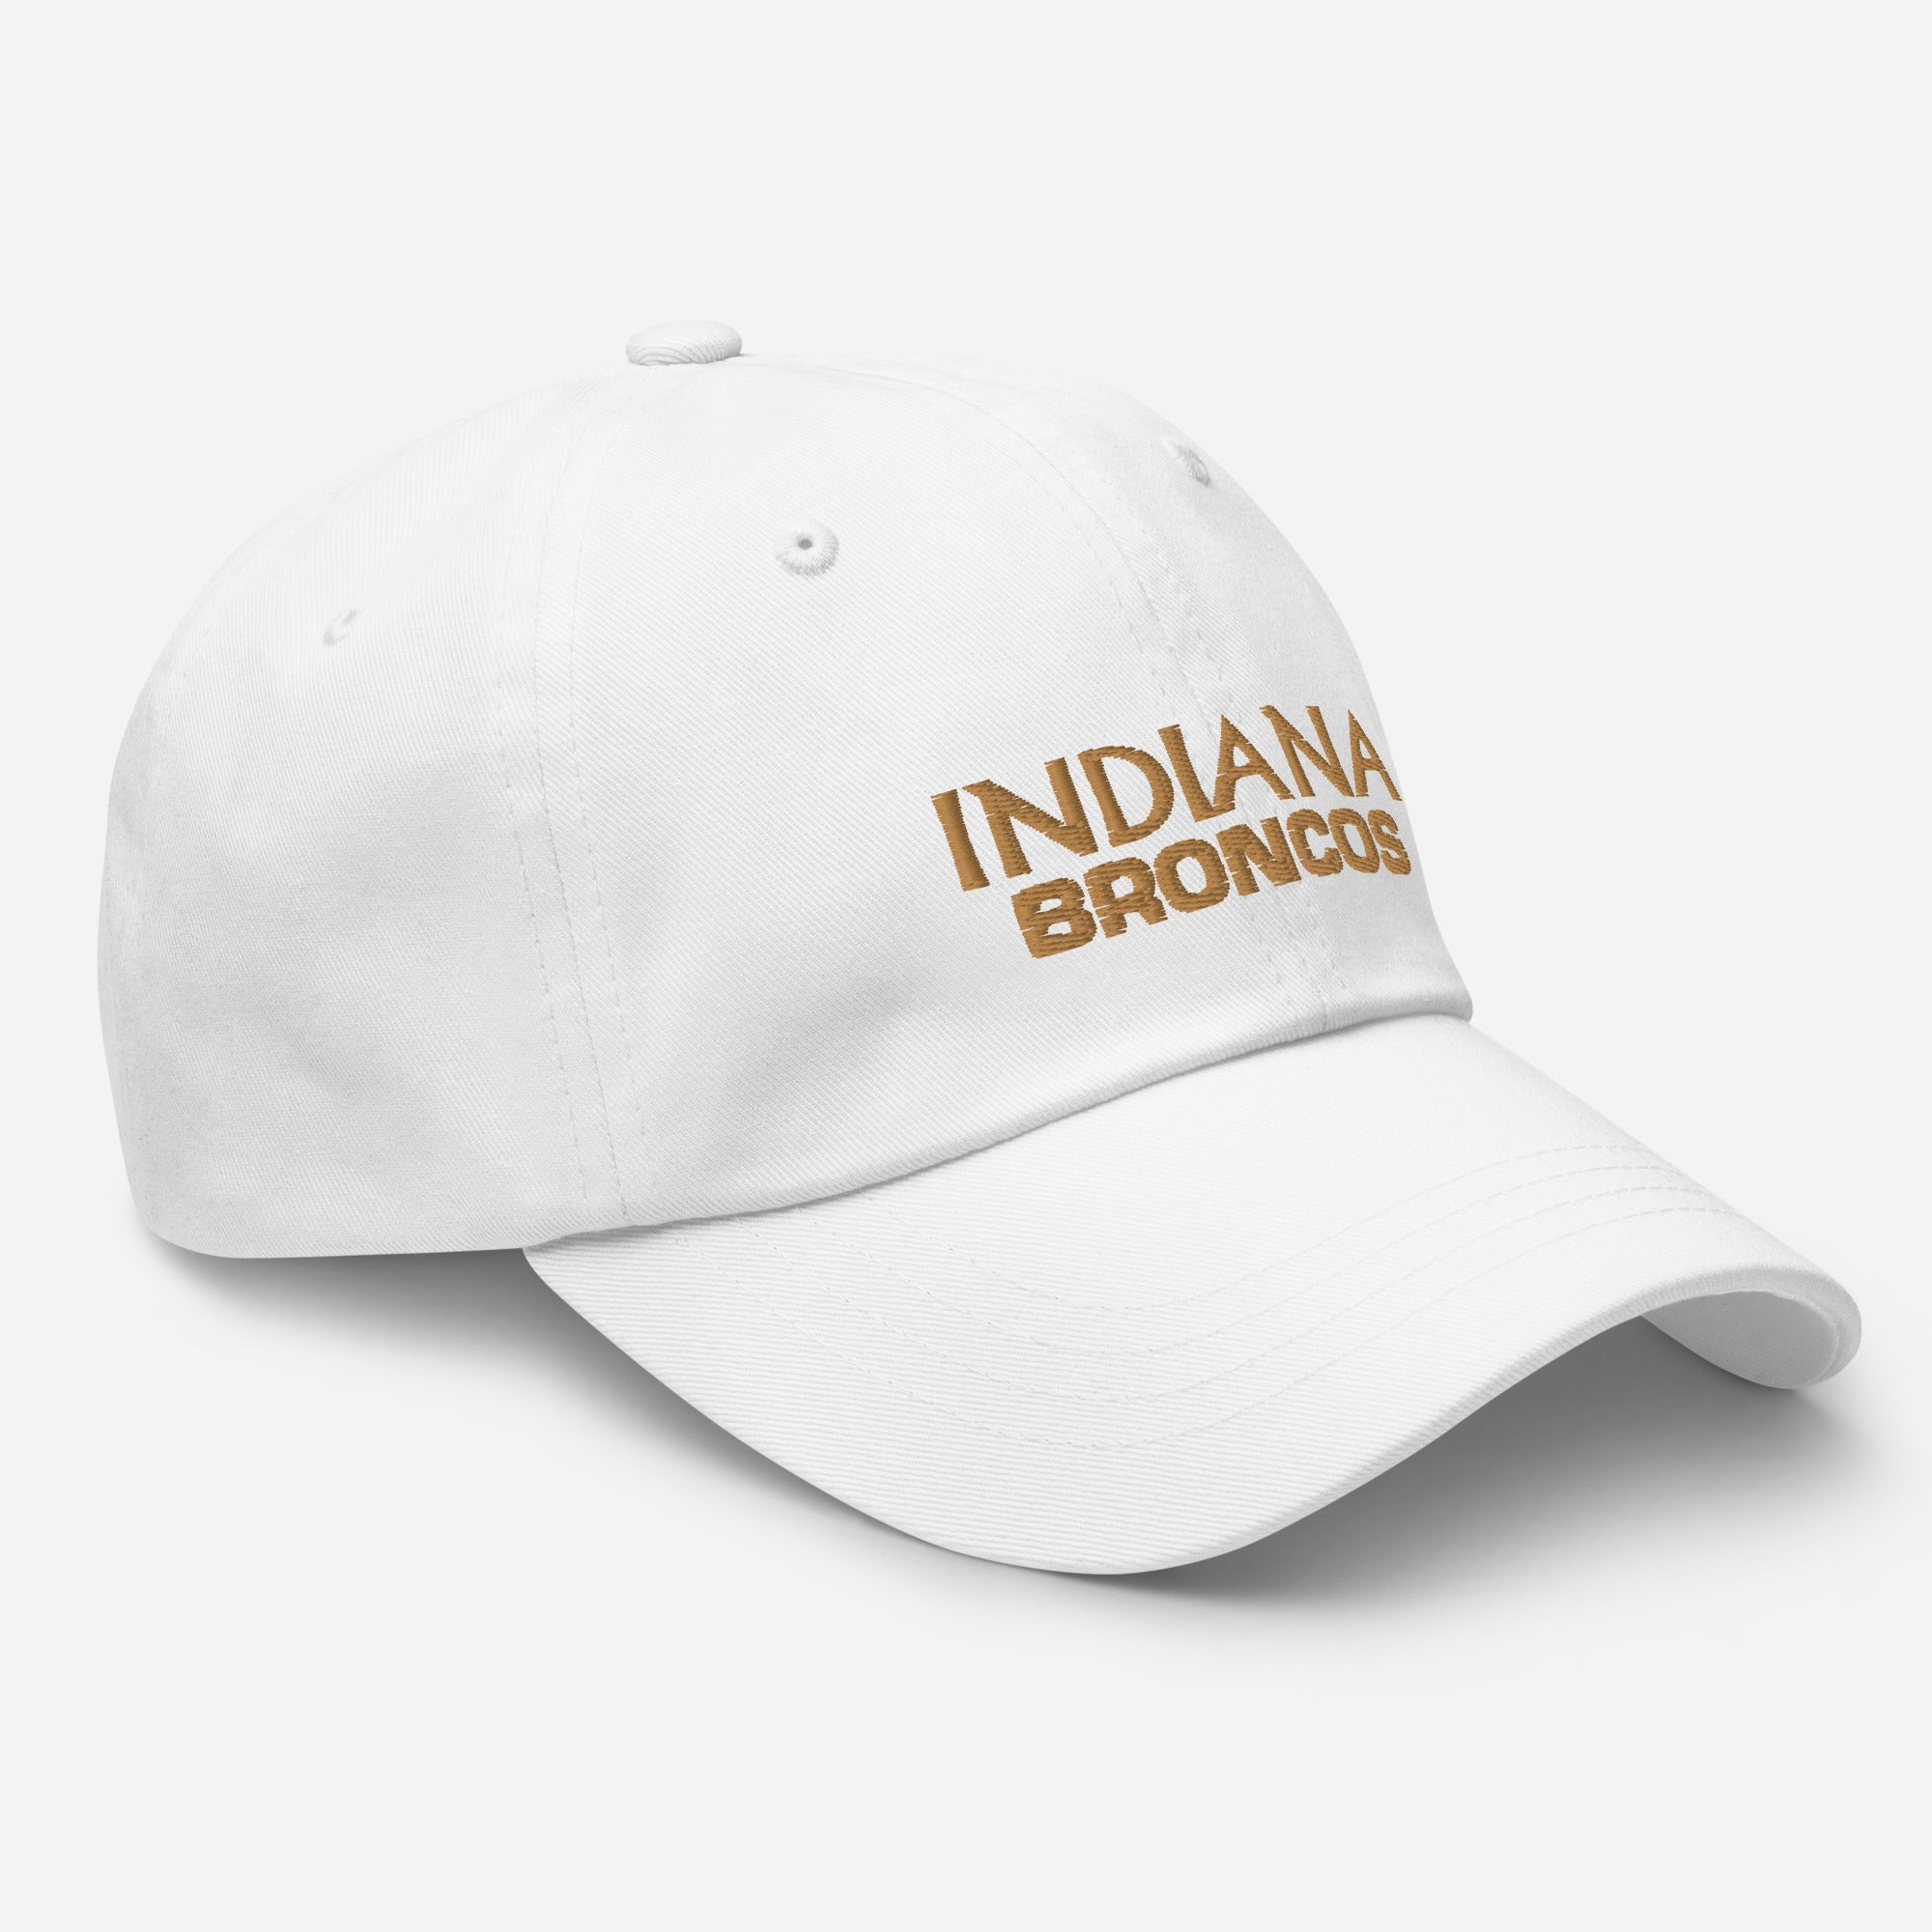 Indiana Broncos Dad hat